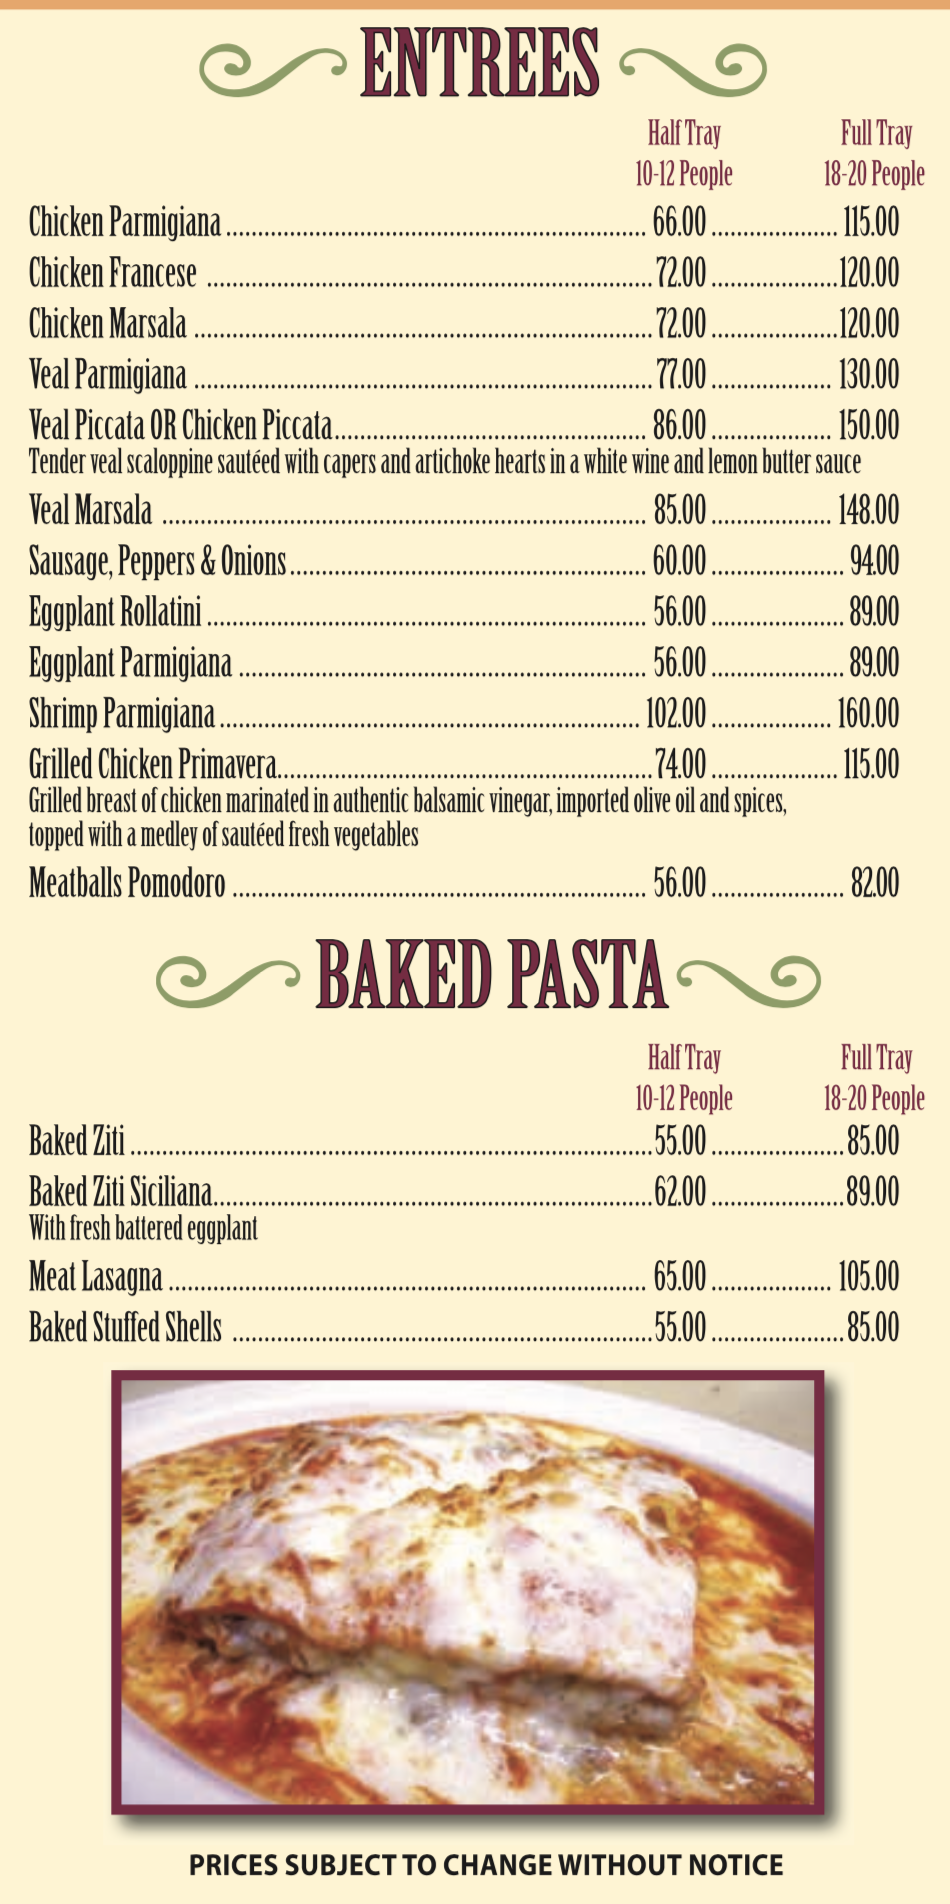 The Pizza Place Restaurant & Pizzeria - Hewlett NY - Italian Food